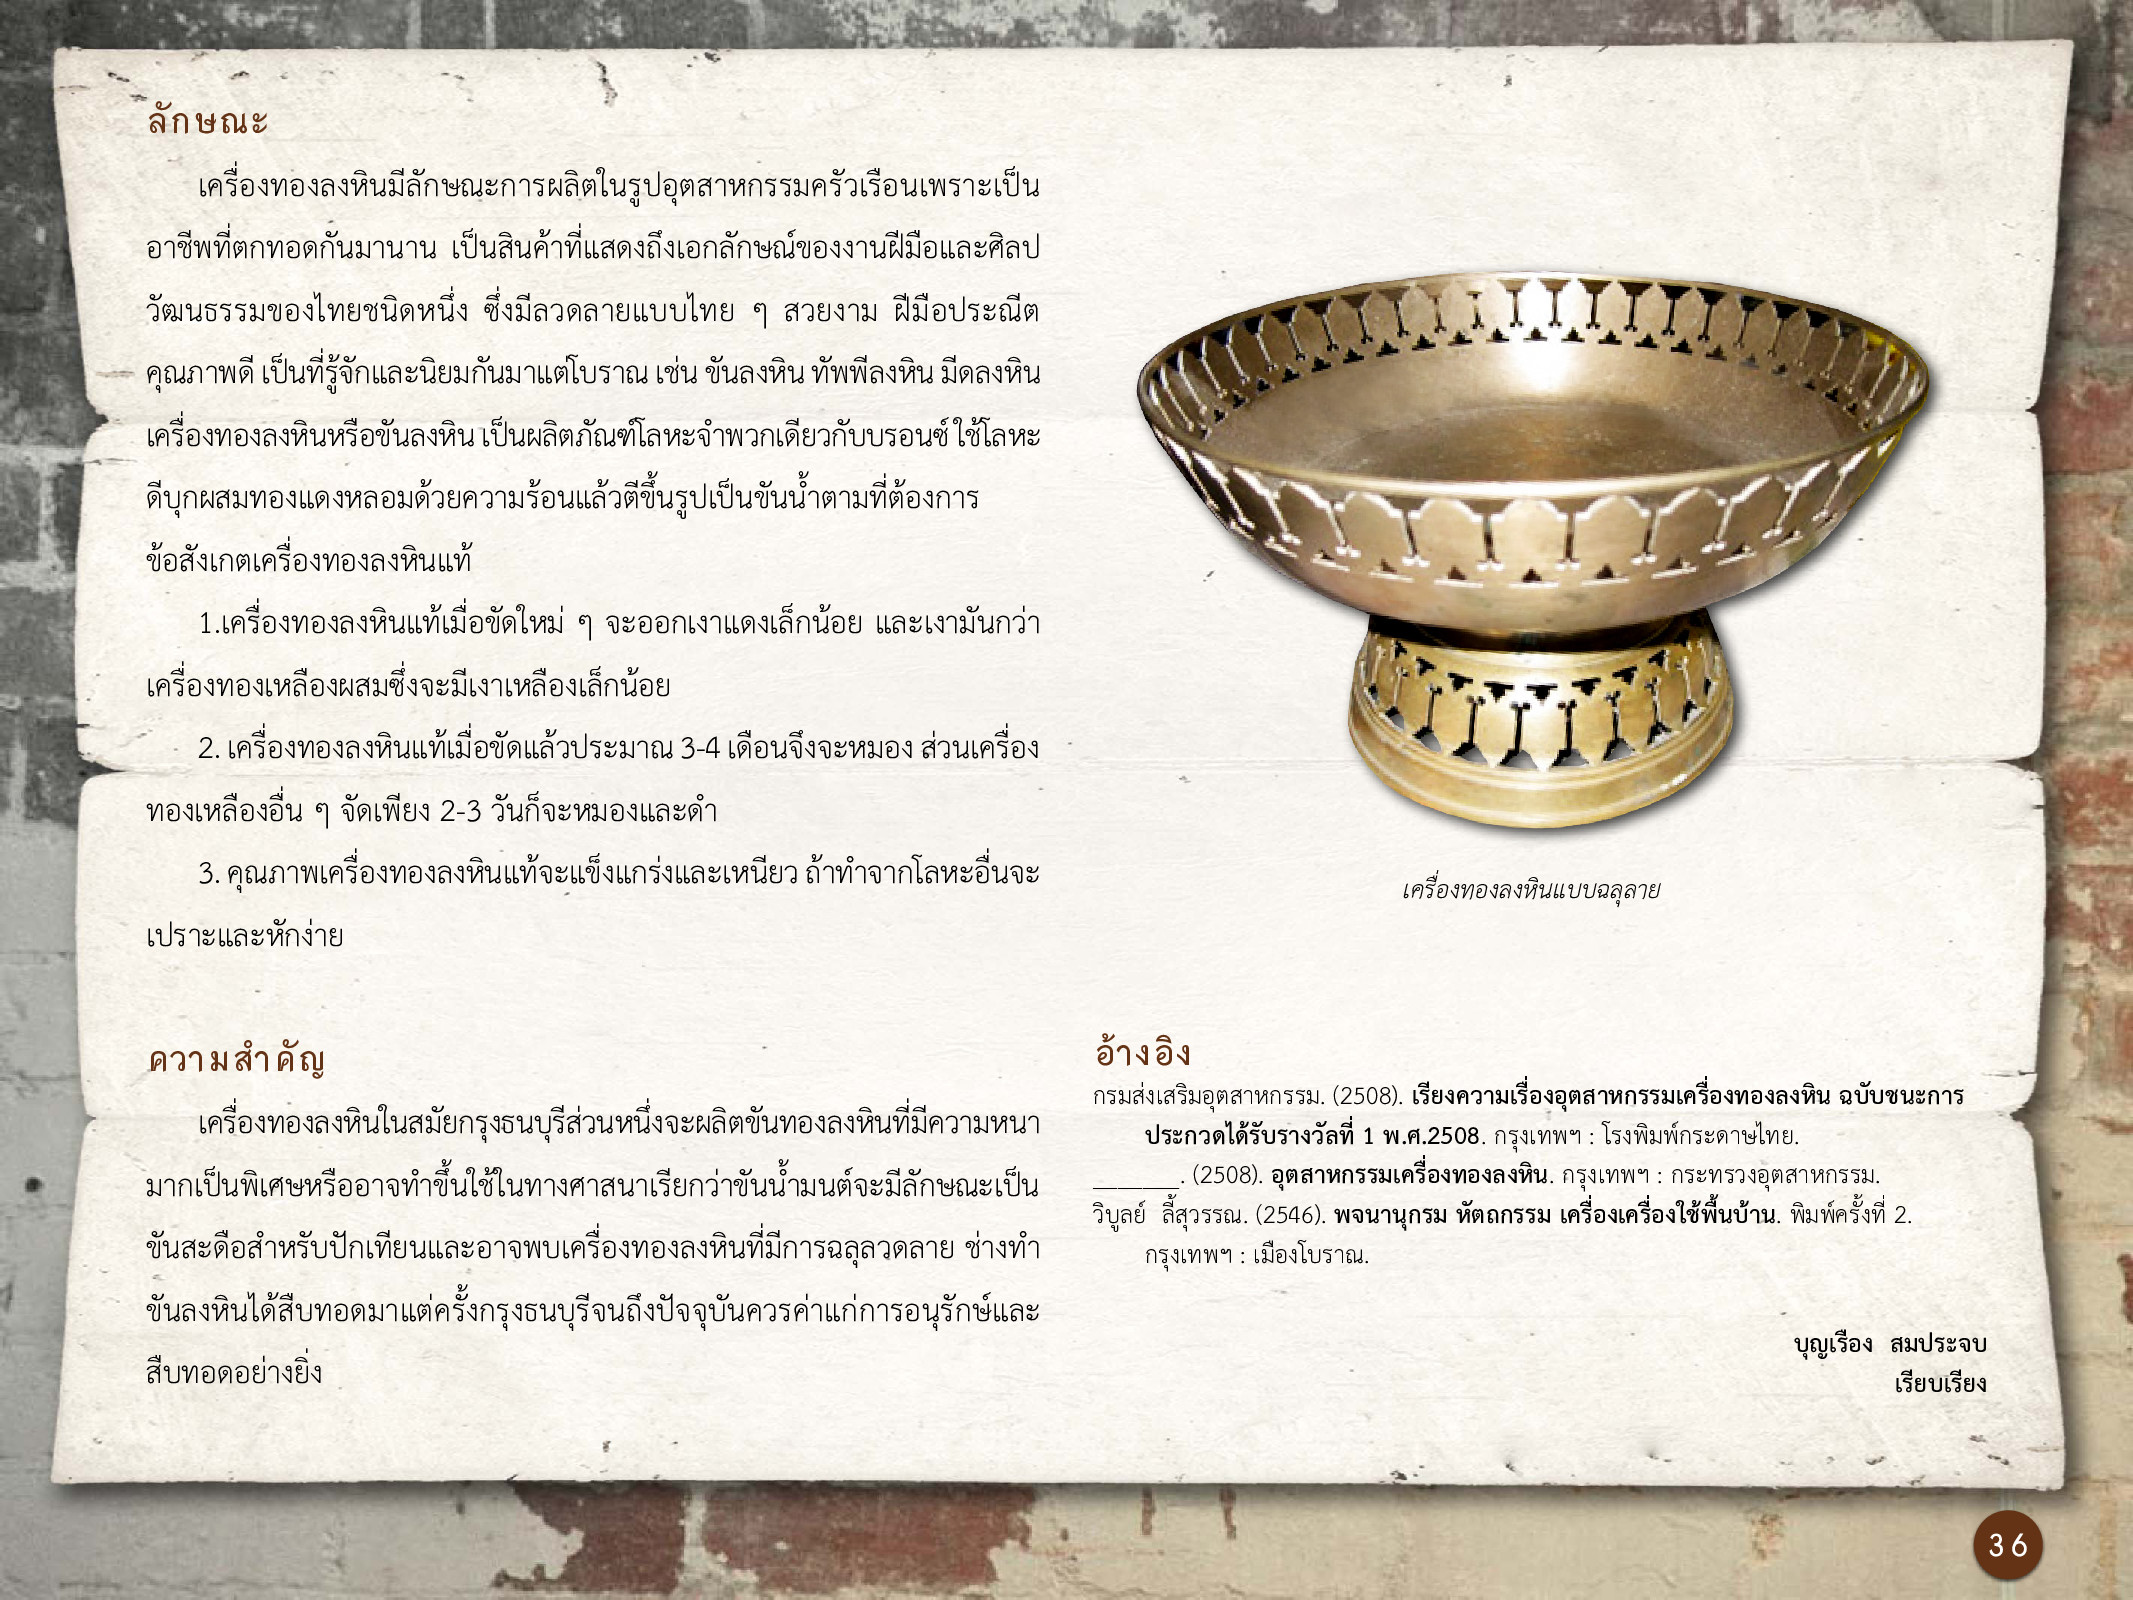 ศิลปกรรมกรุงธนบุรี ./images/encyclopedia/36.jpg